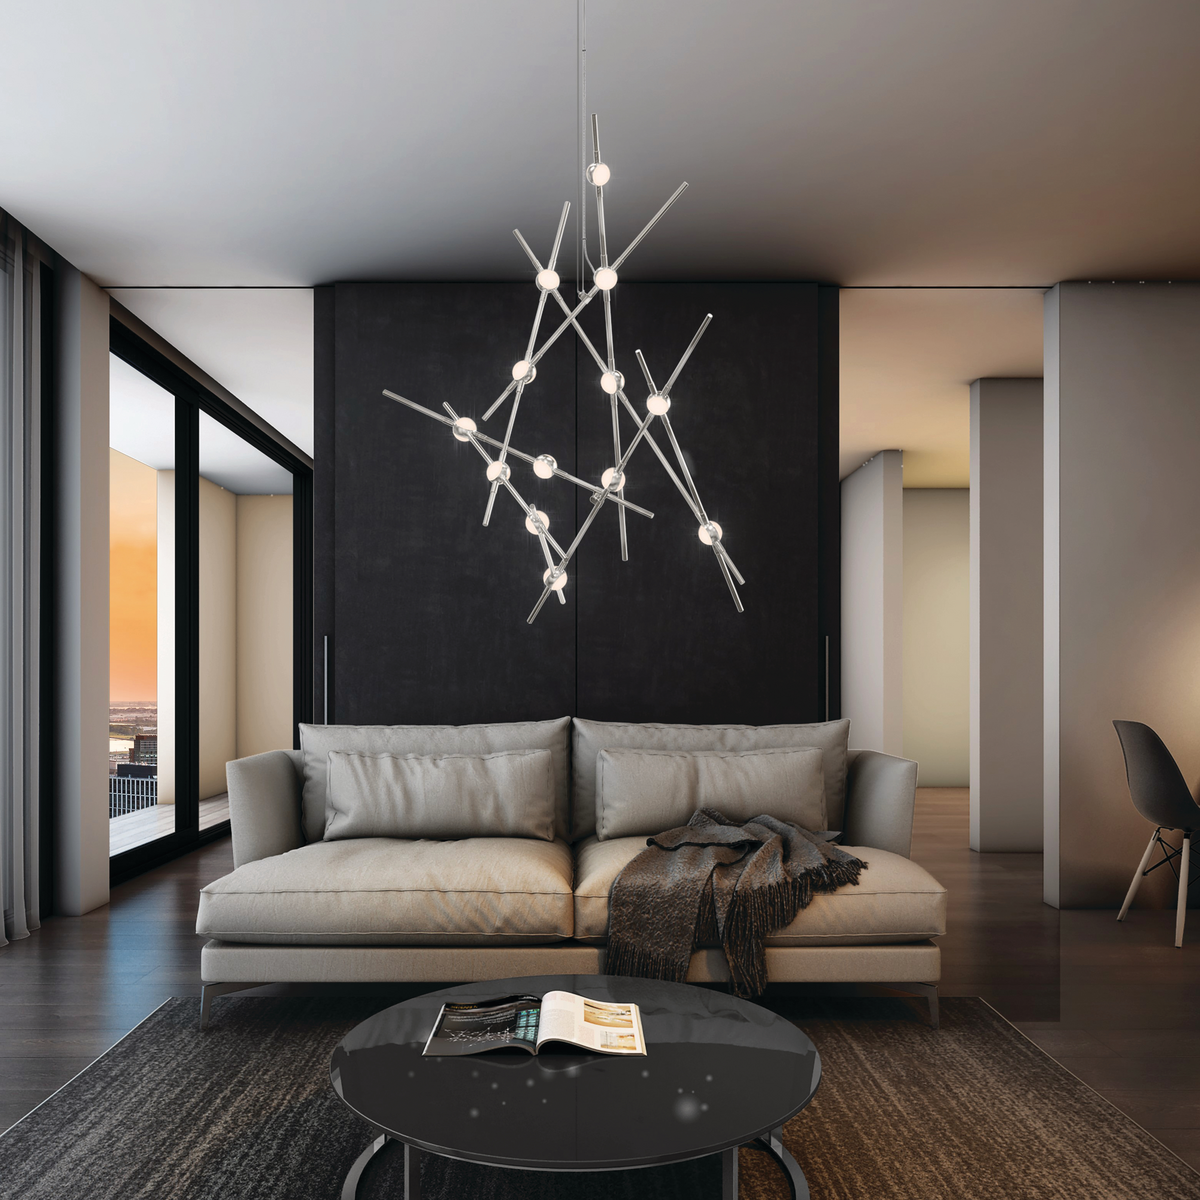 Sputnik-style chandelier light in black and beige living room